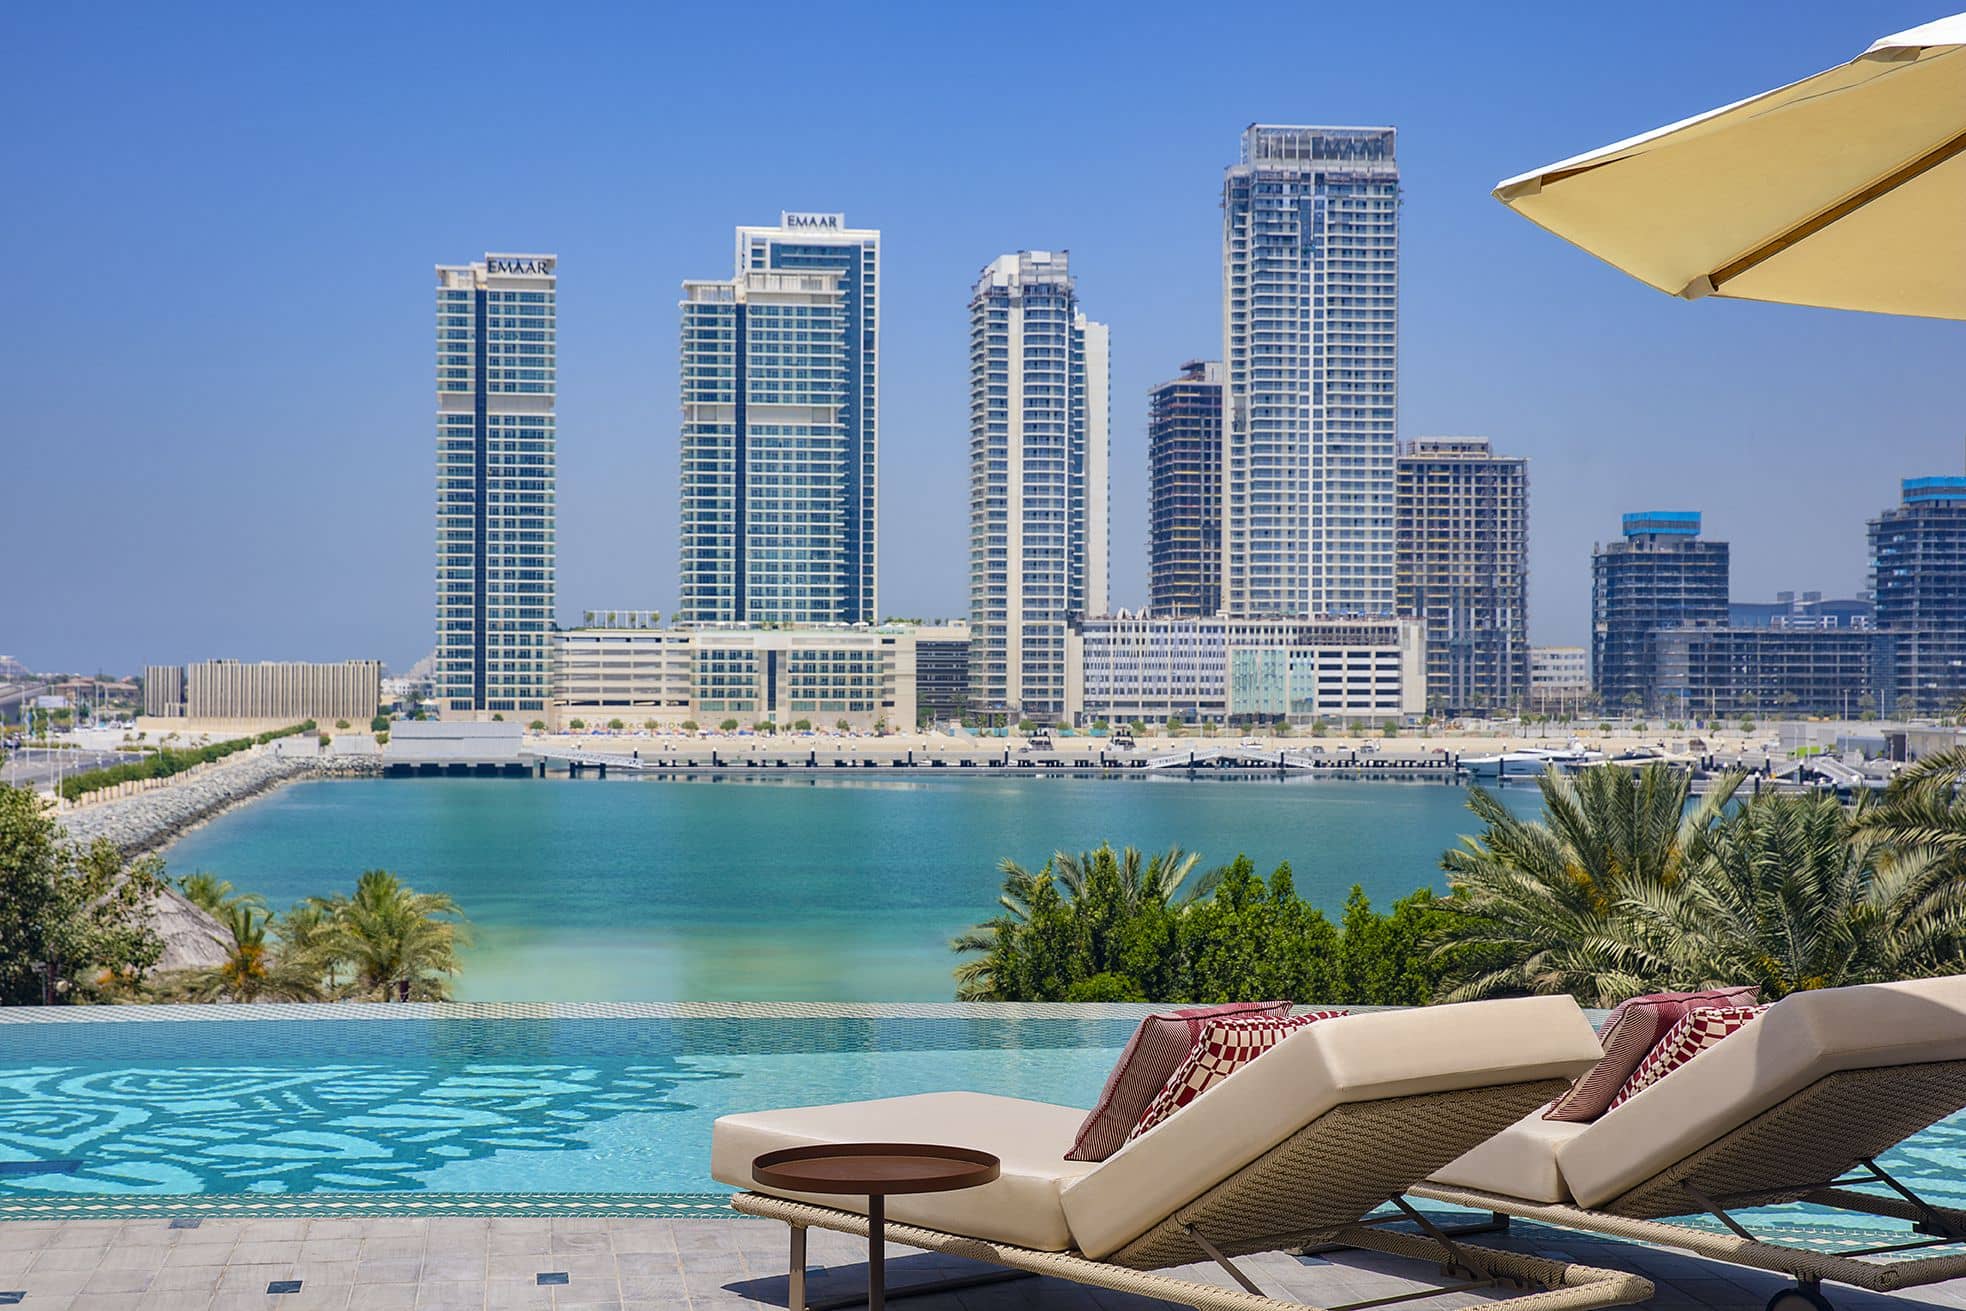 W Dubai Mina Seyahi: urban skyscraper hotel opens in time for Eid holiday getaways